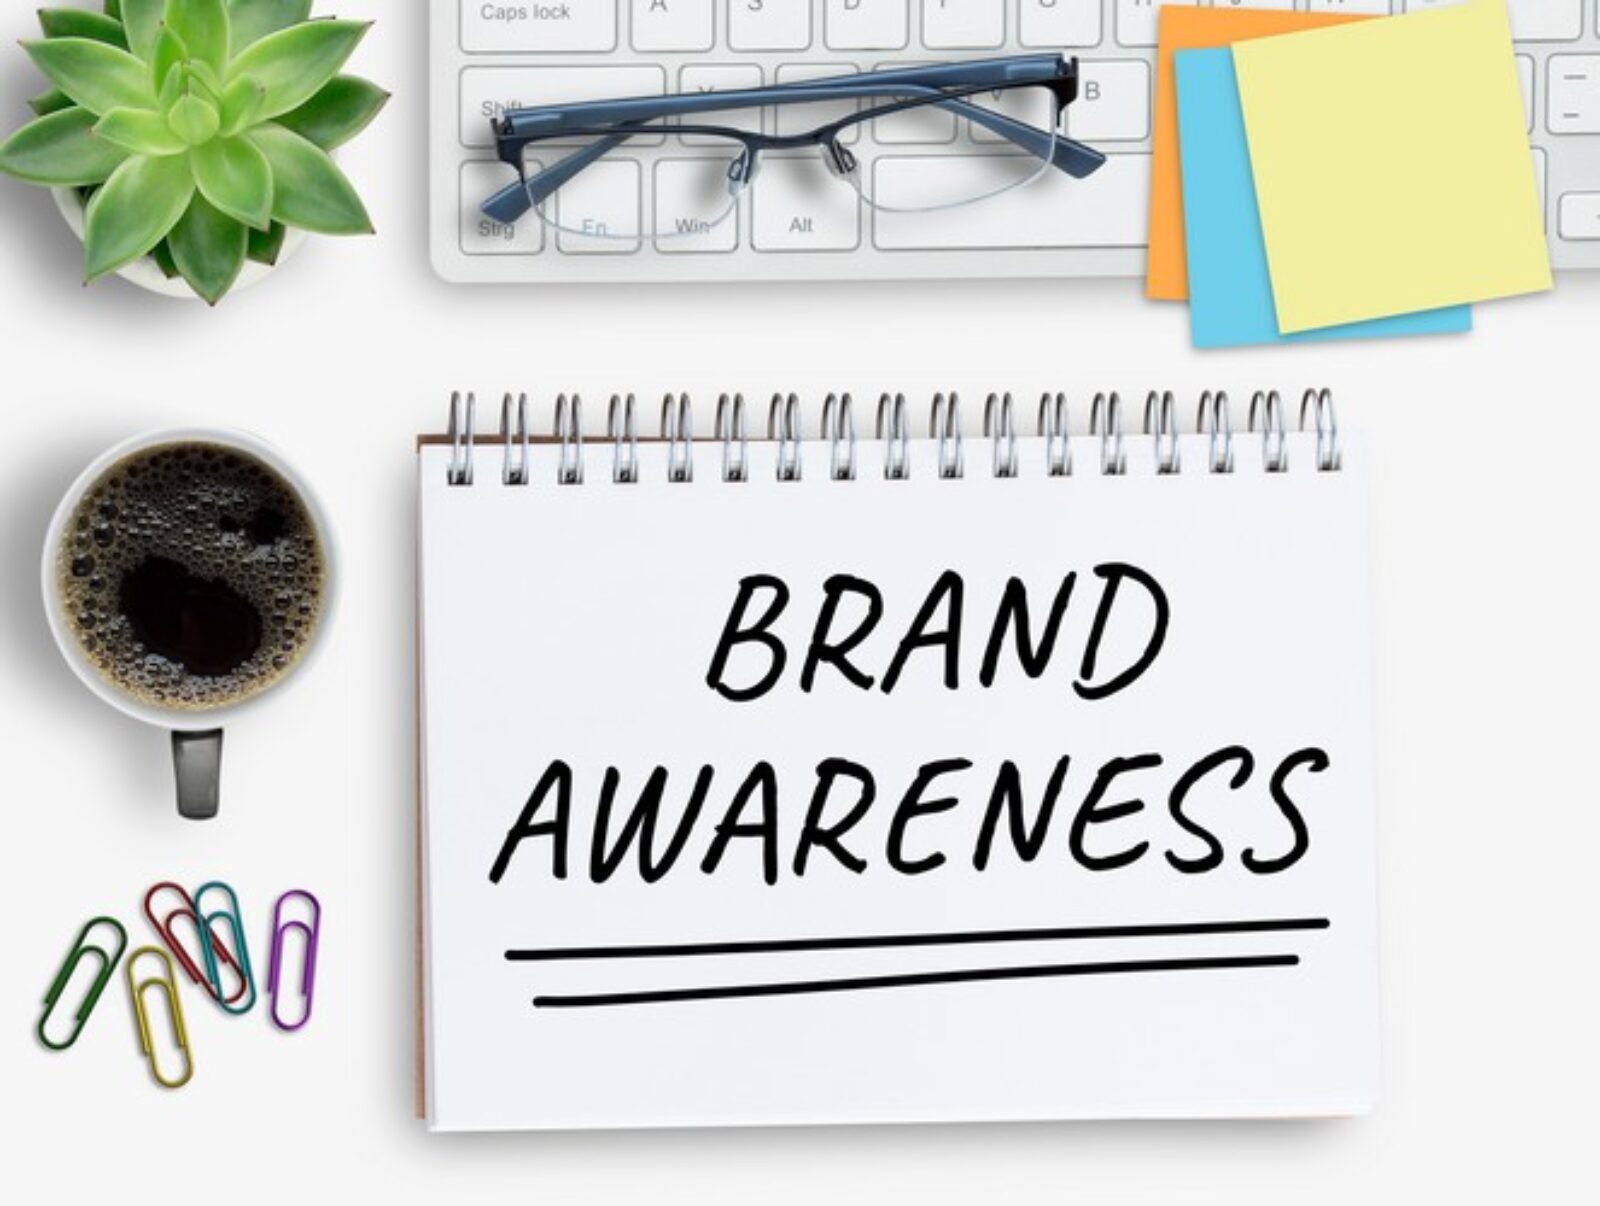 O que é Brand Awareness? - Conceito, importância e dicas para melhorar!